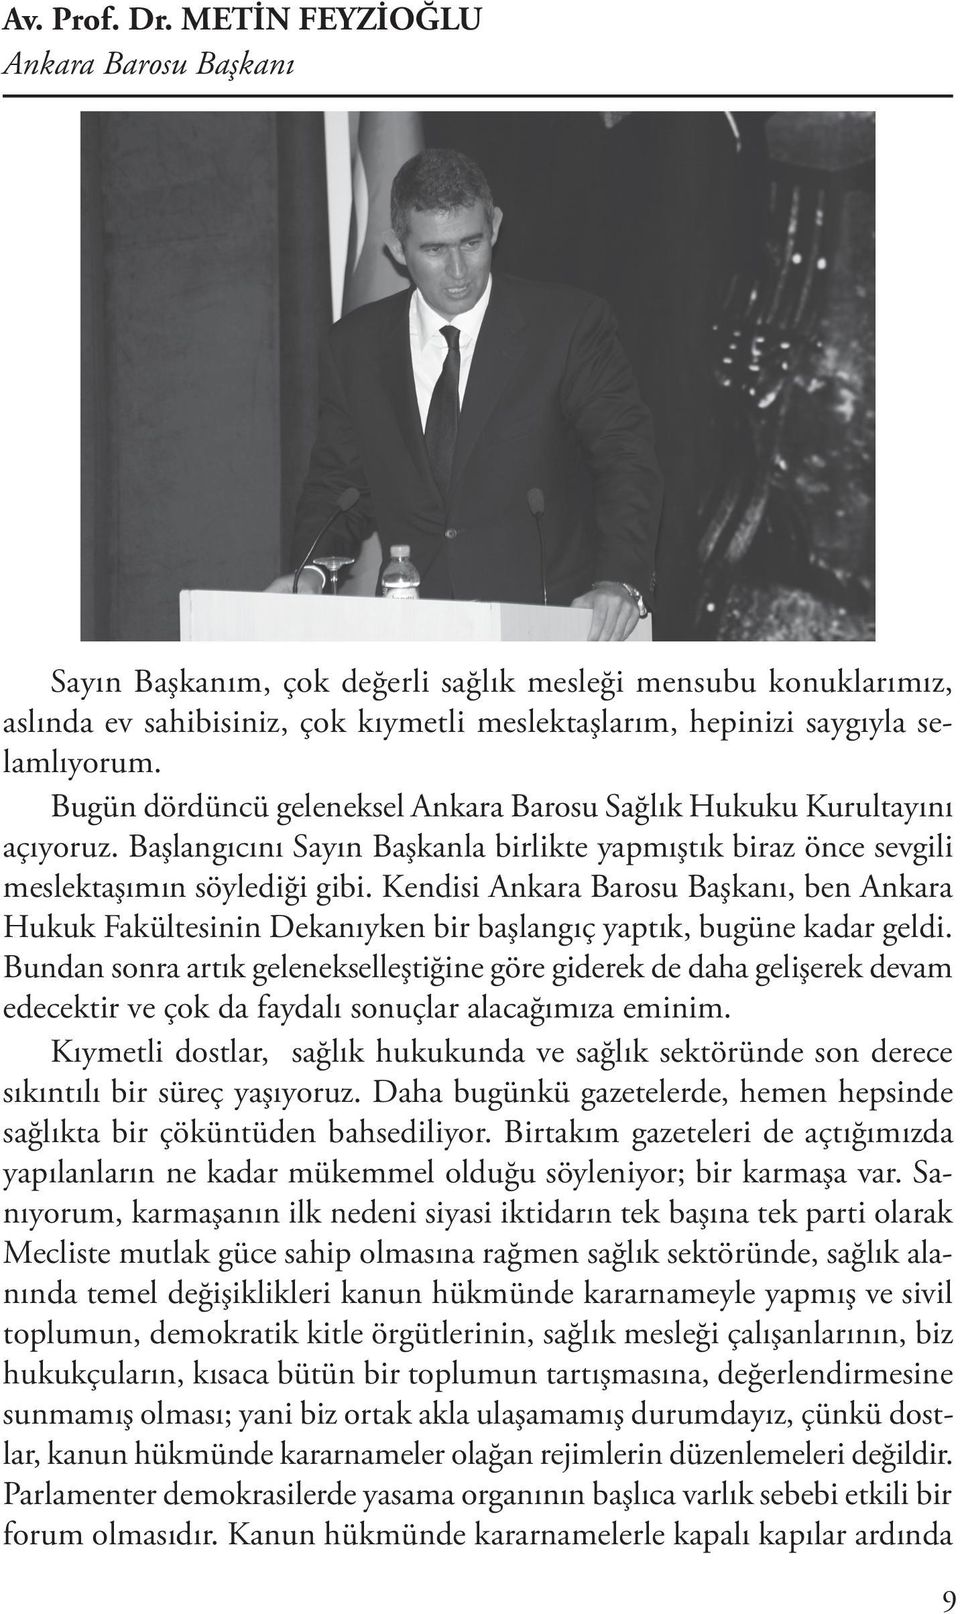 Bugün dördüncü geleneksel Ankara Barosu Sağlık Hukuku Kurultayını açıyoruz. Başlangıcını Sayın Başkanla birlikte yapmıştık biraz önce sevgili meslektaşımın söylediği gibi.